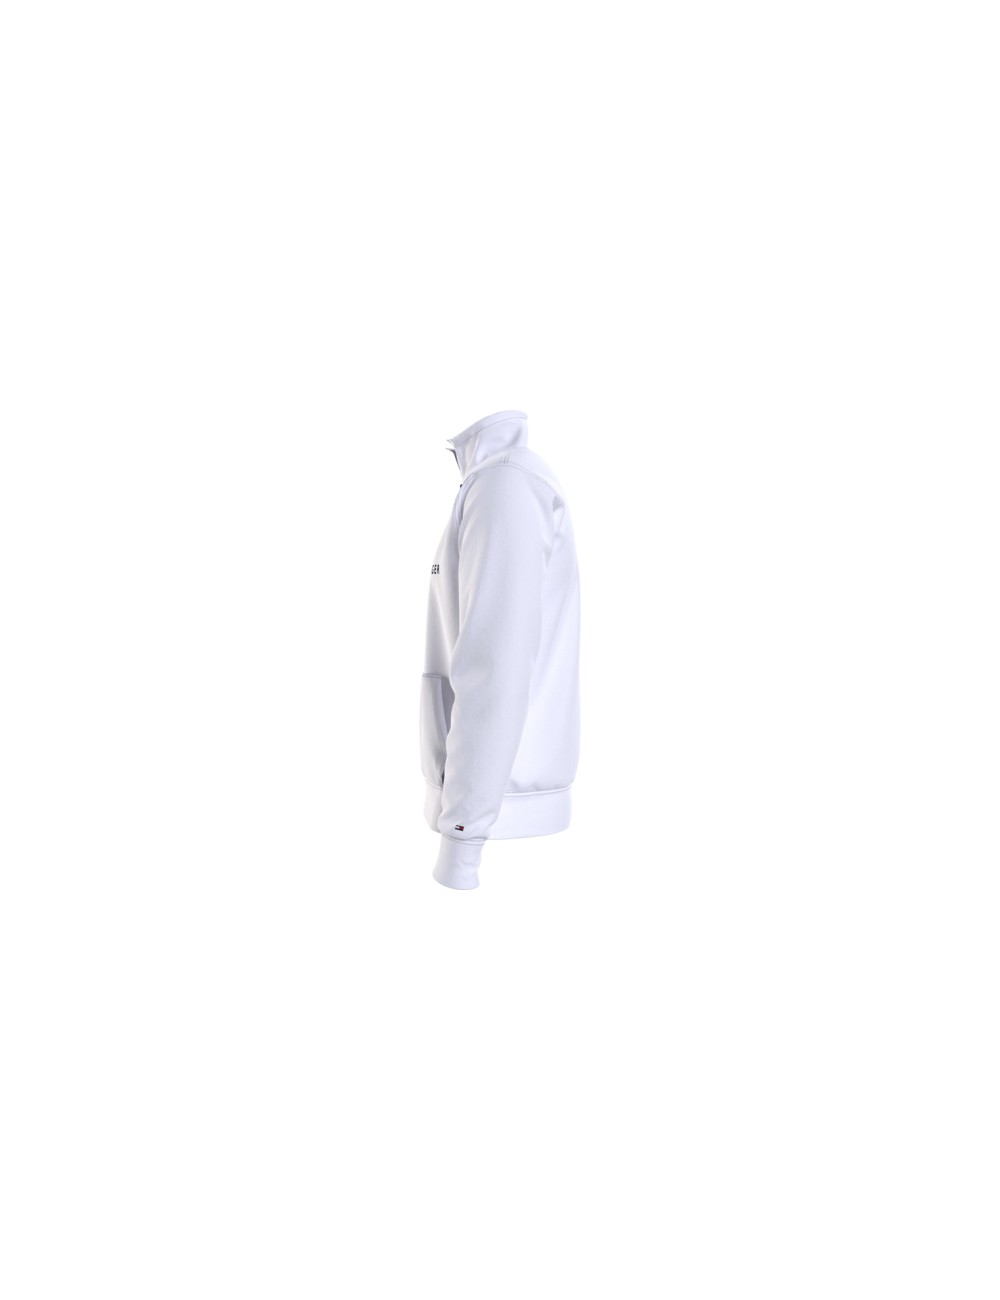 Tommy Hilfiger White Sweatshirt